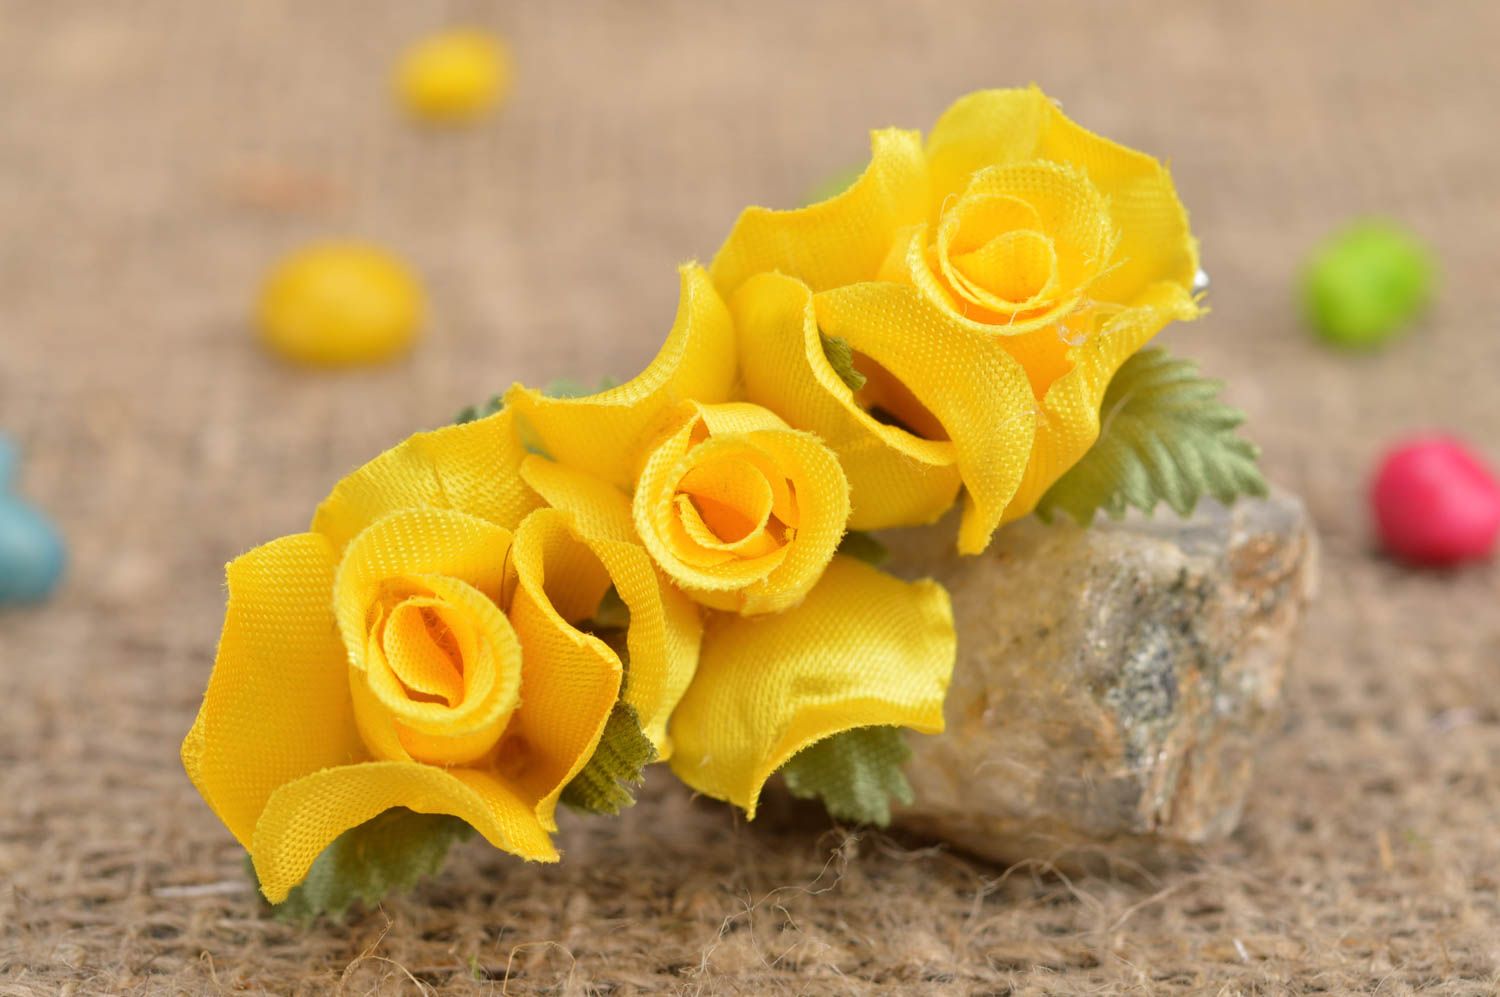 Детская заколка цветок желтая в виде розочек небольшая красивая ручной работы фото 1